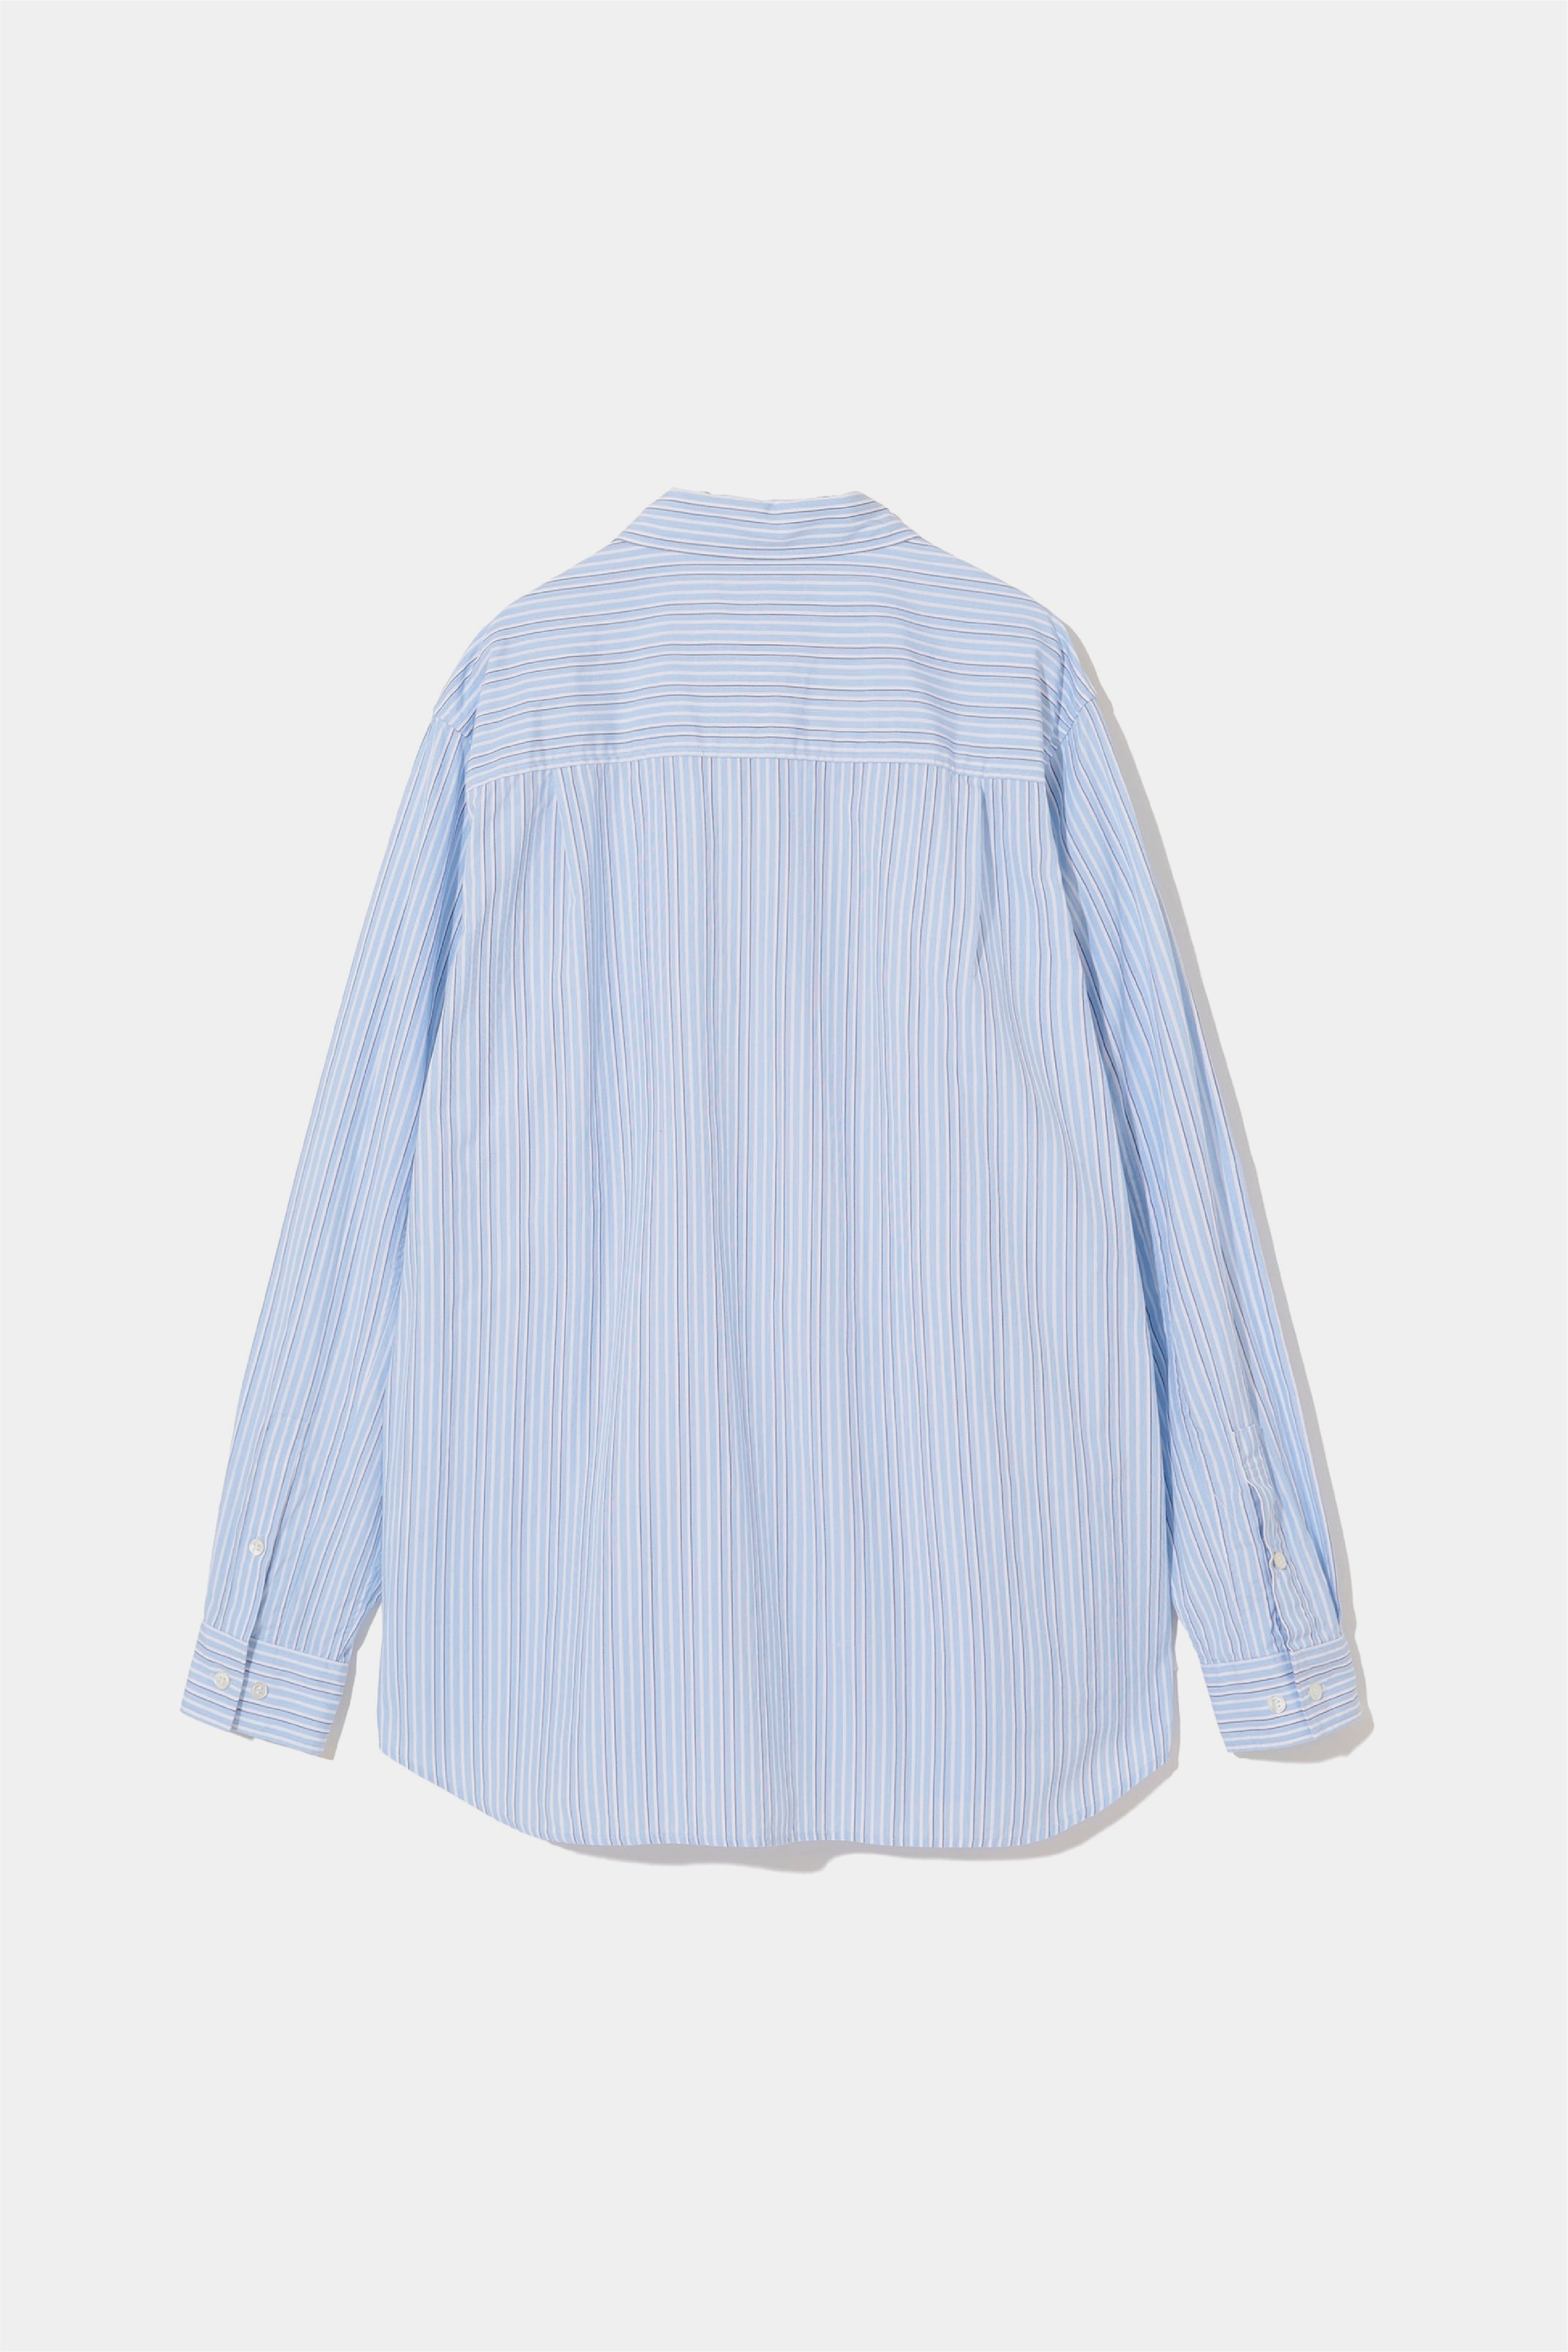 Selectshop FRAME - UNDERCOVER Shirt Shirts Concept Store Dubai